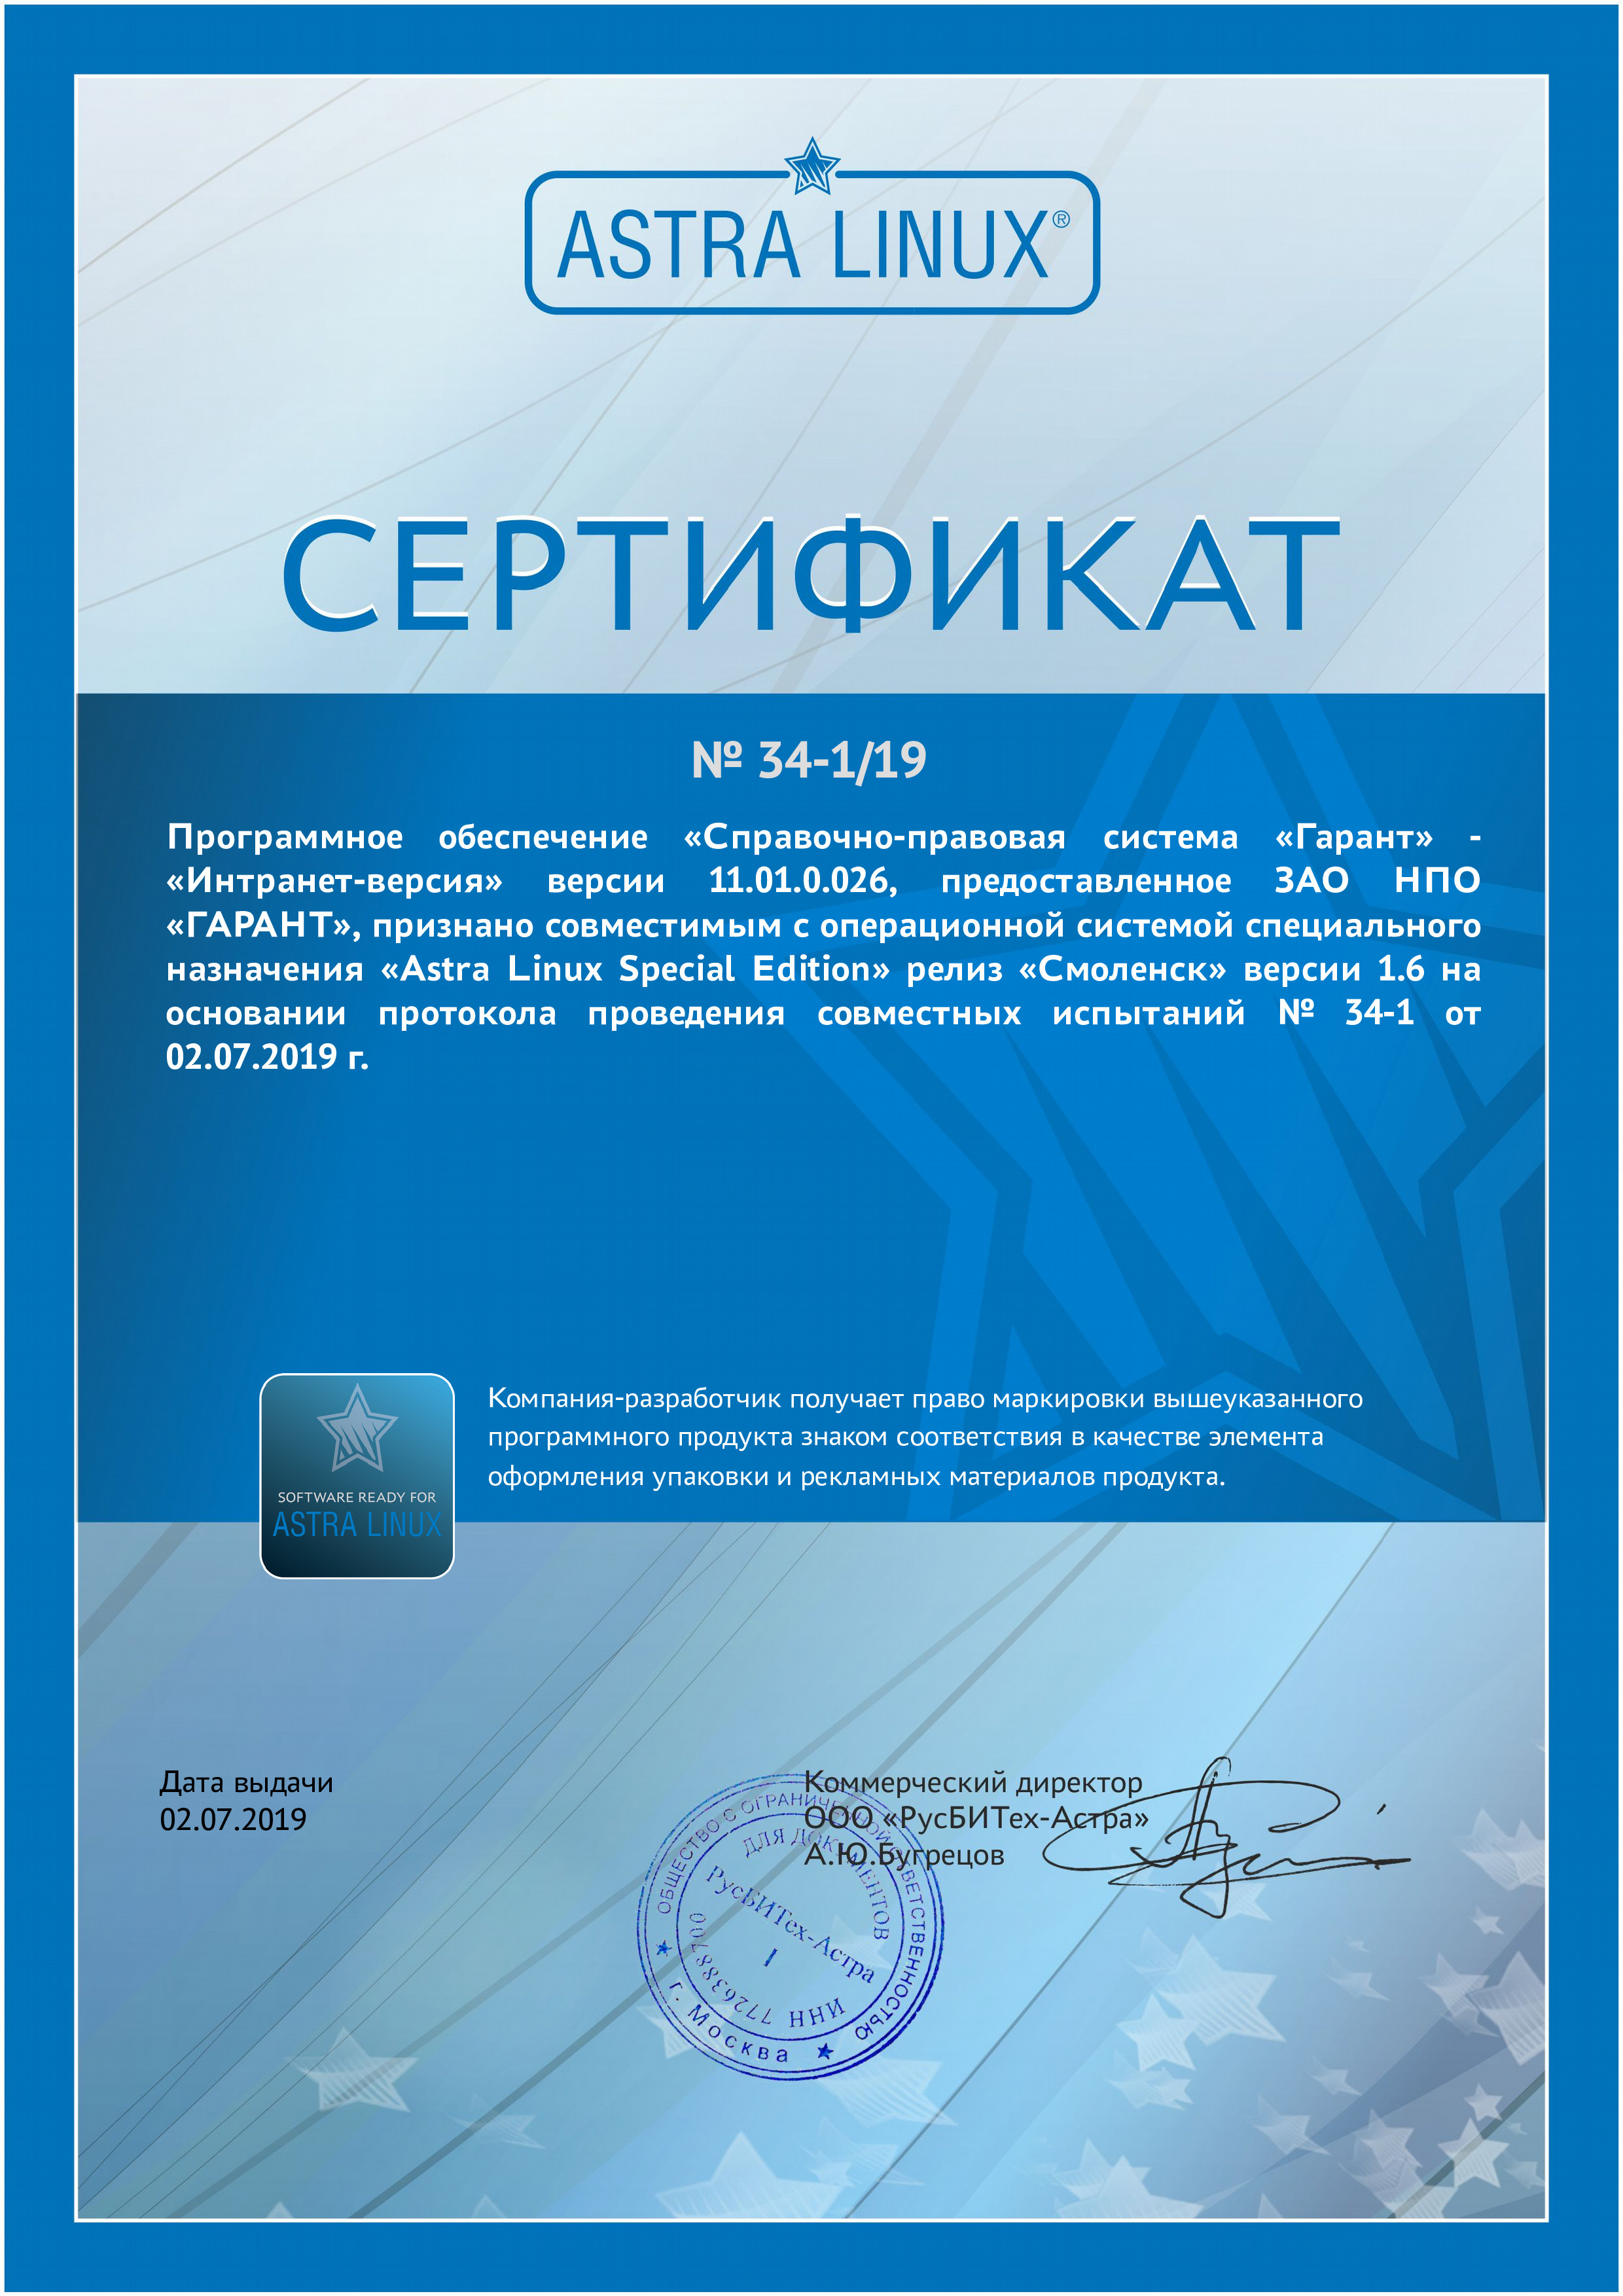 Сертификат совместимости с операционной системой «Astra Linux Common Edition»